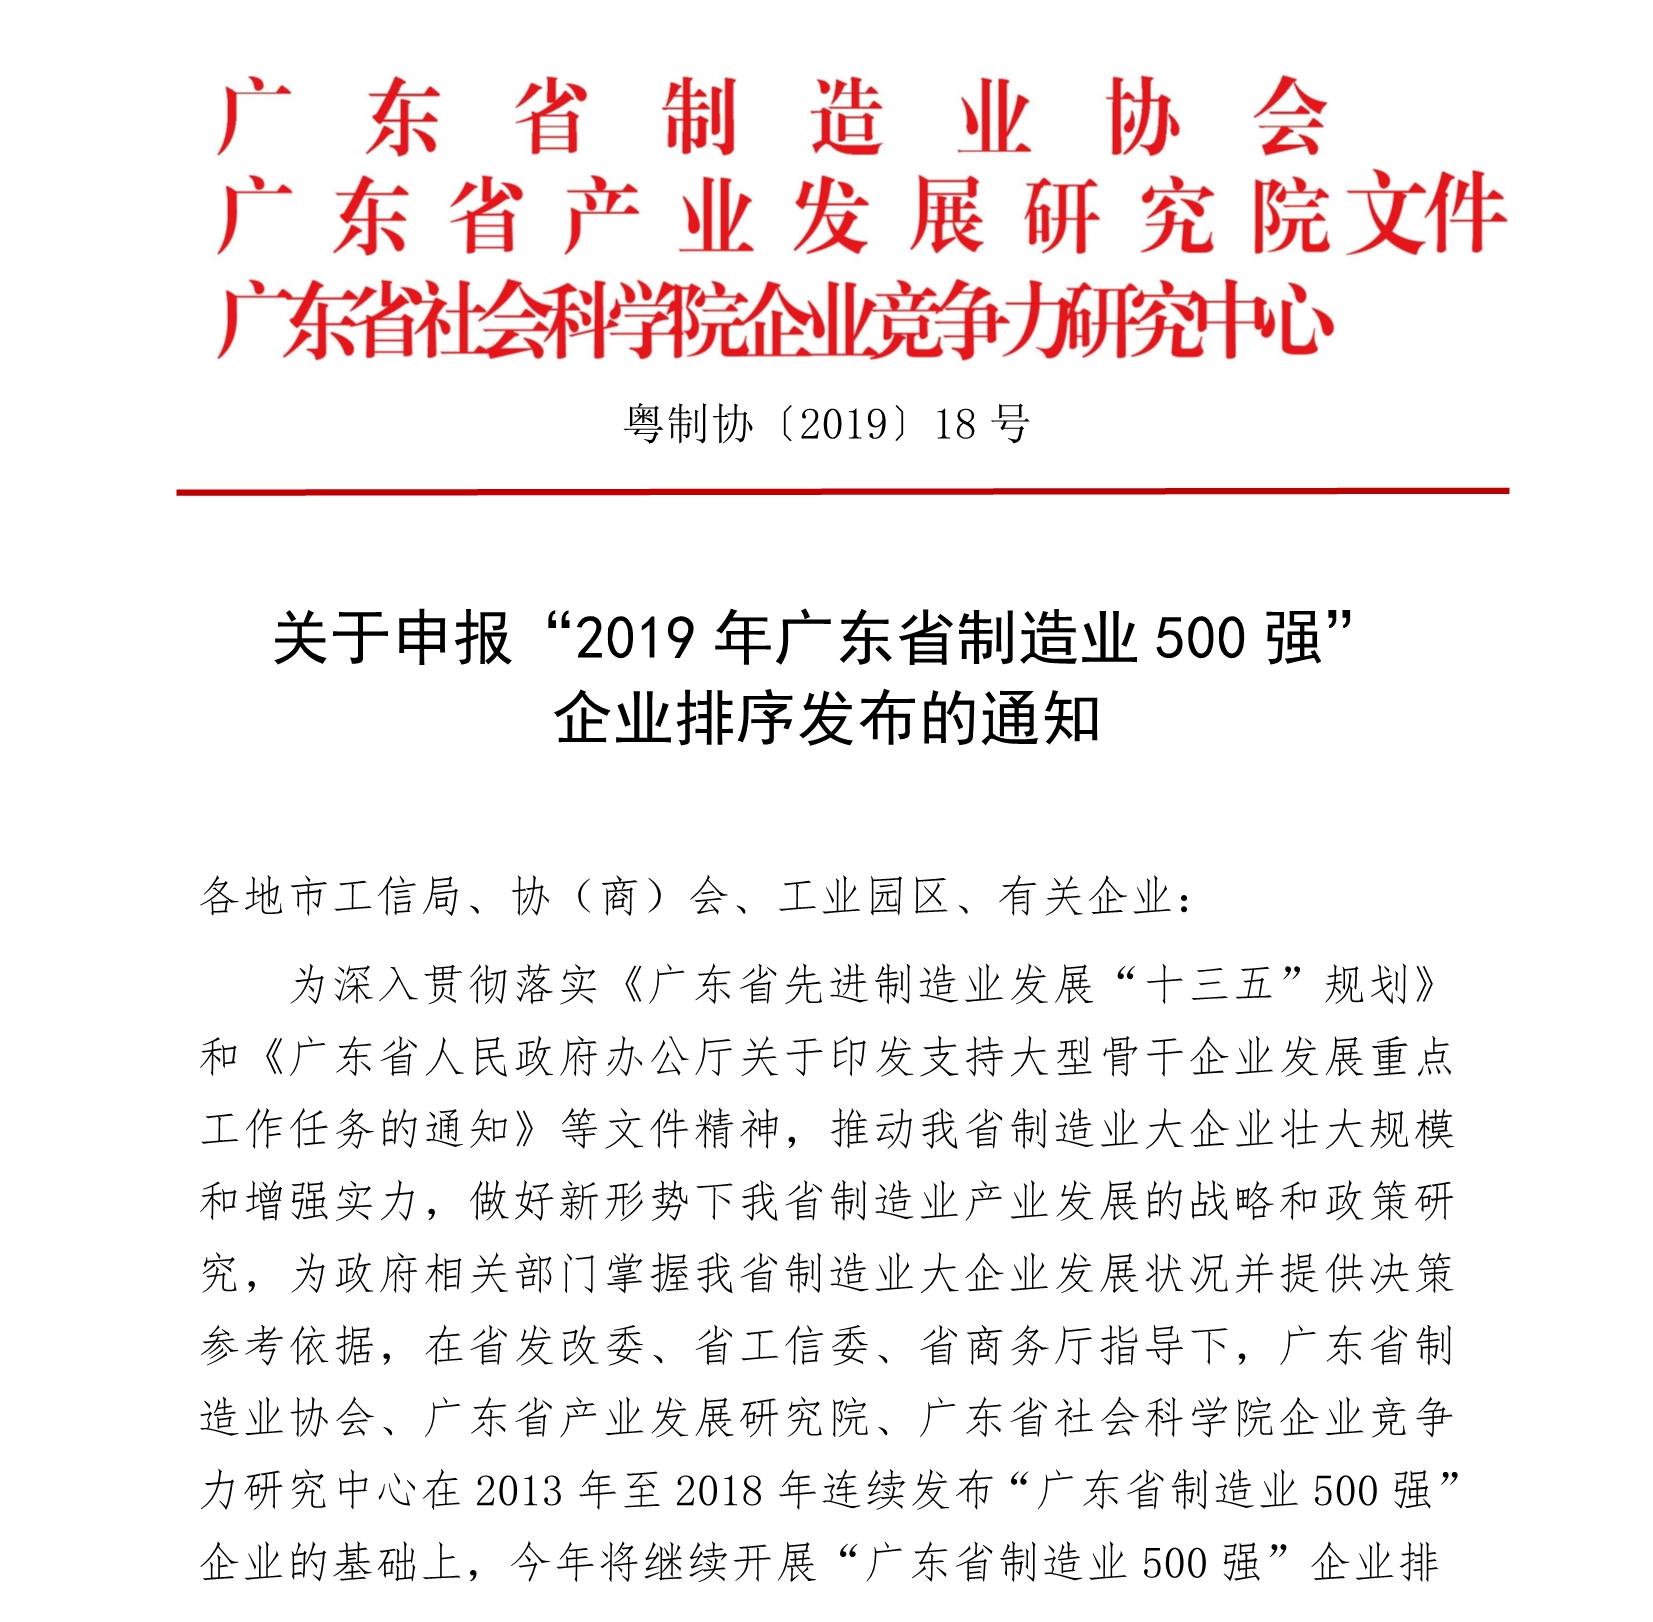 关于申报“2019年广东省制造业500强” 企业排序发布的通知